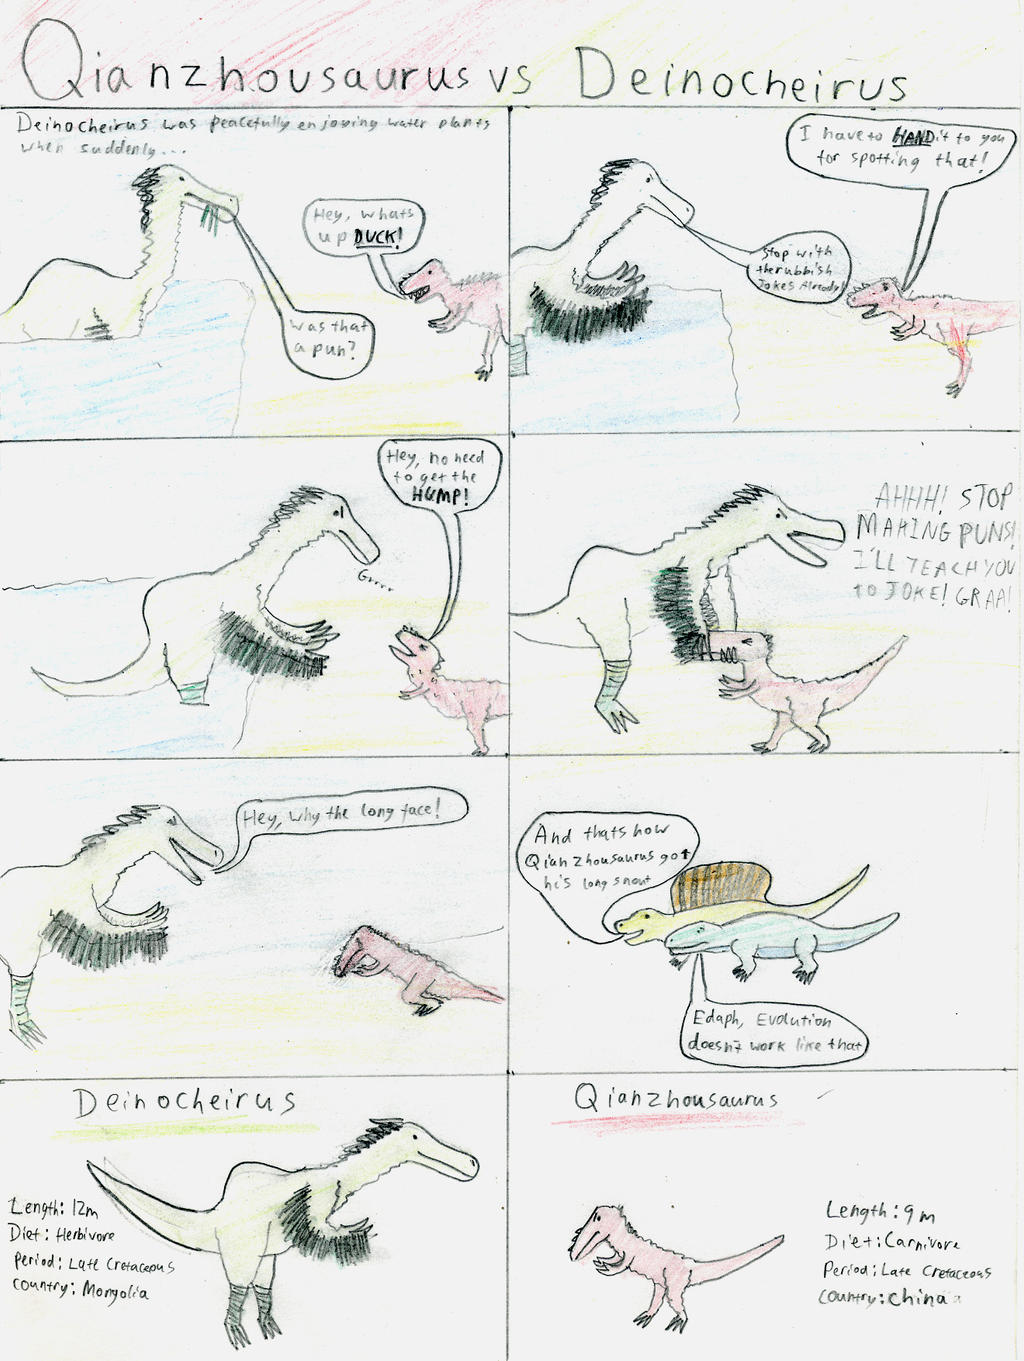 Qianzhousaurus vs Deinocheirus